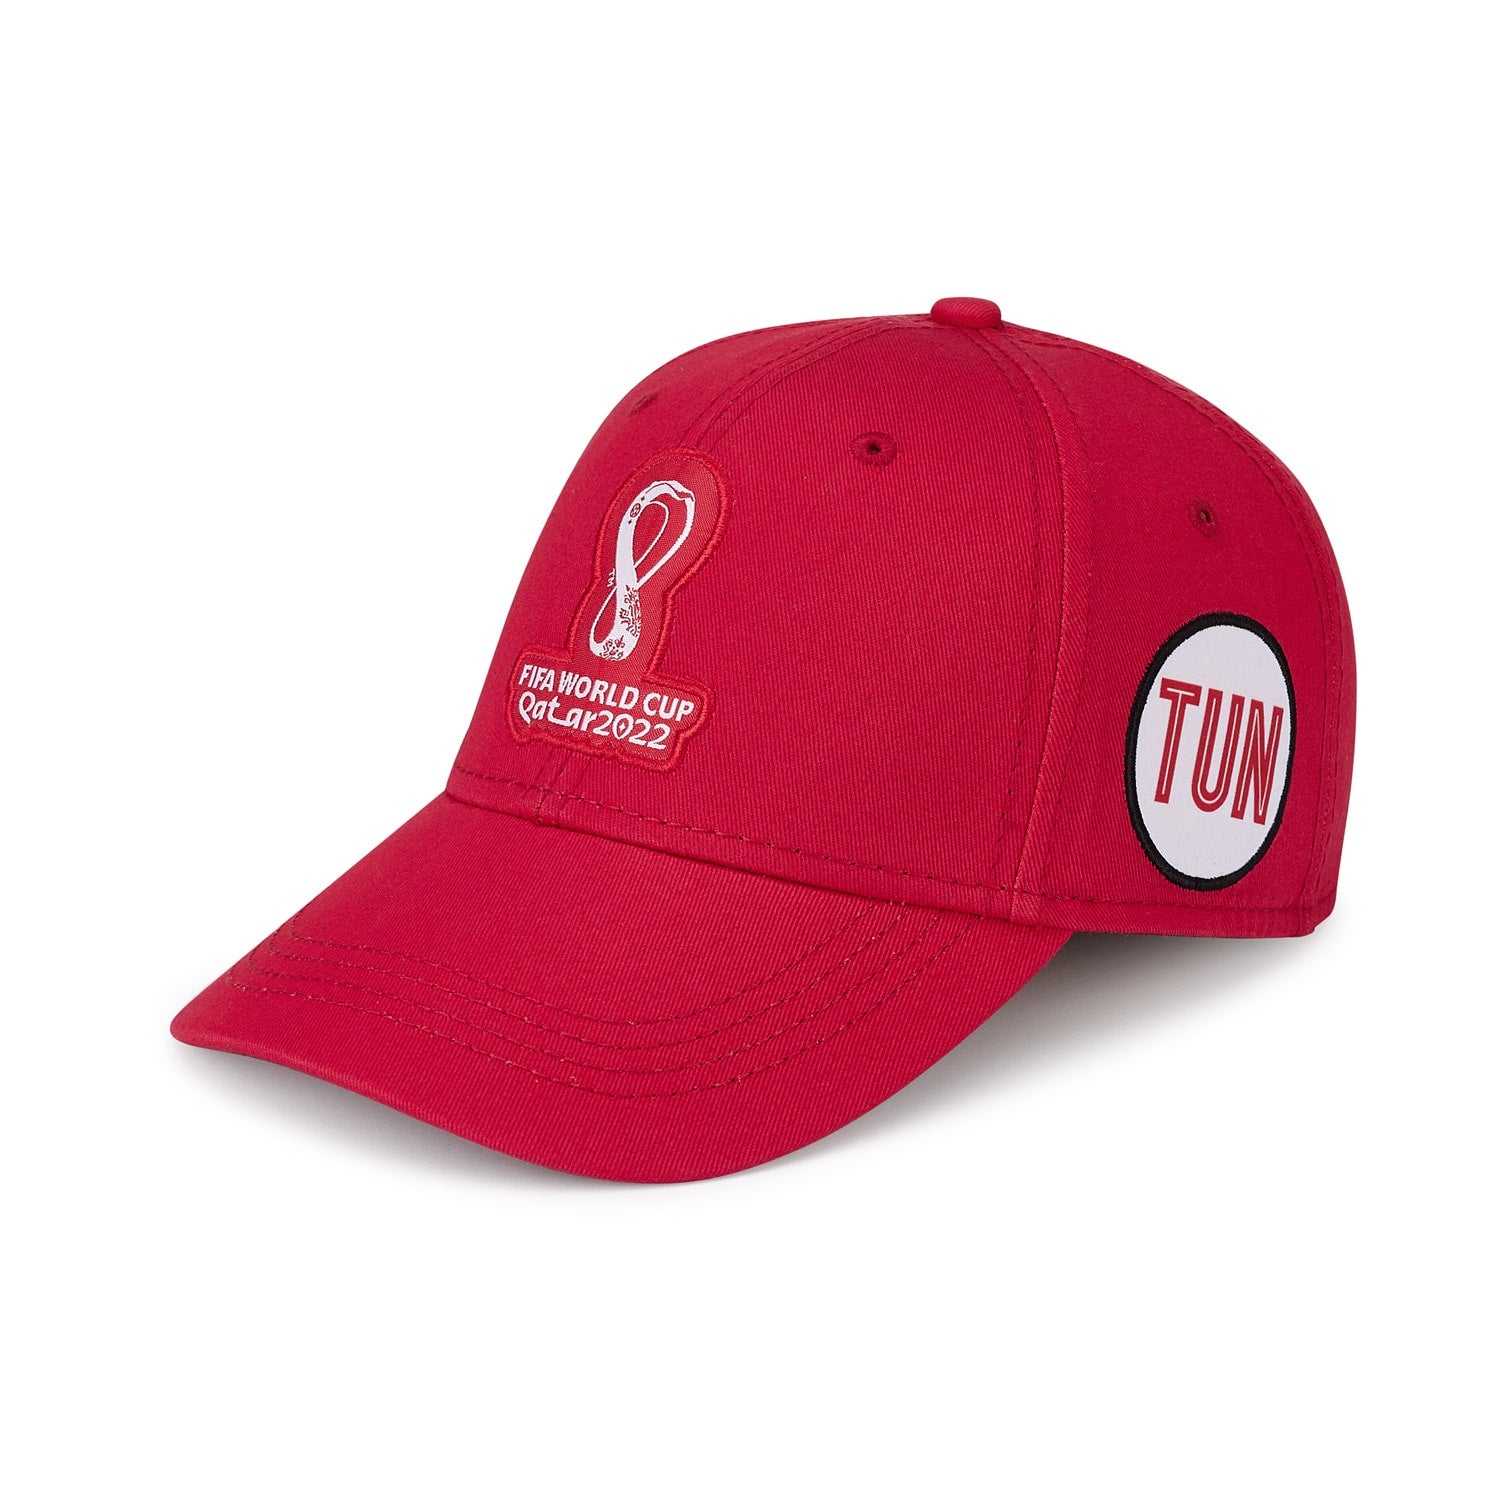 2022 World Cup Tunisia Red Cap - Men's